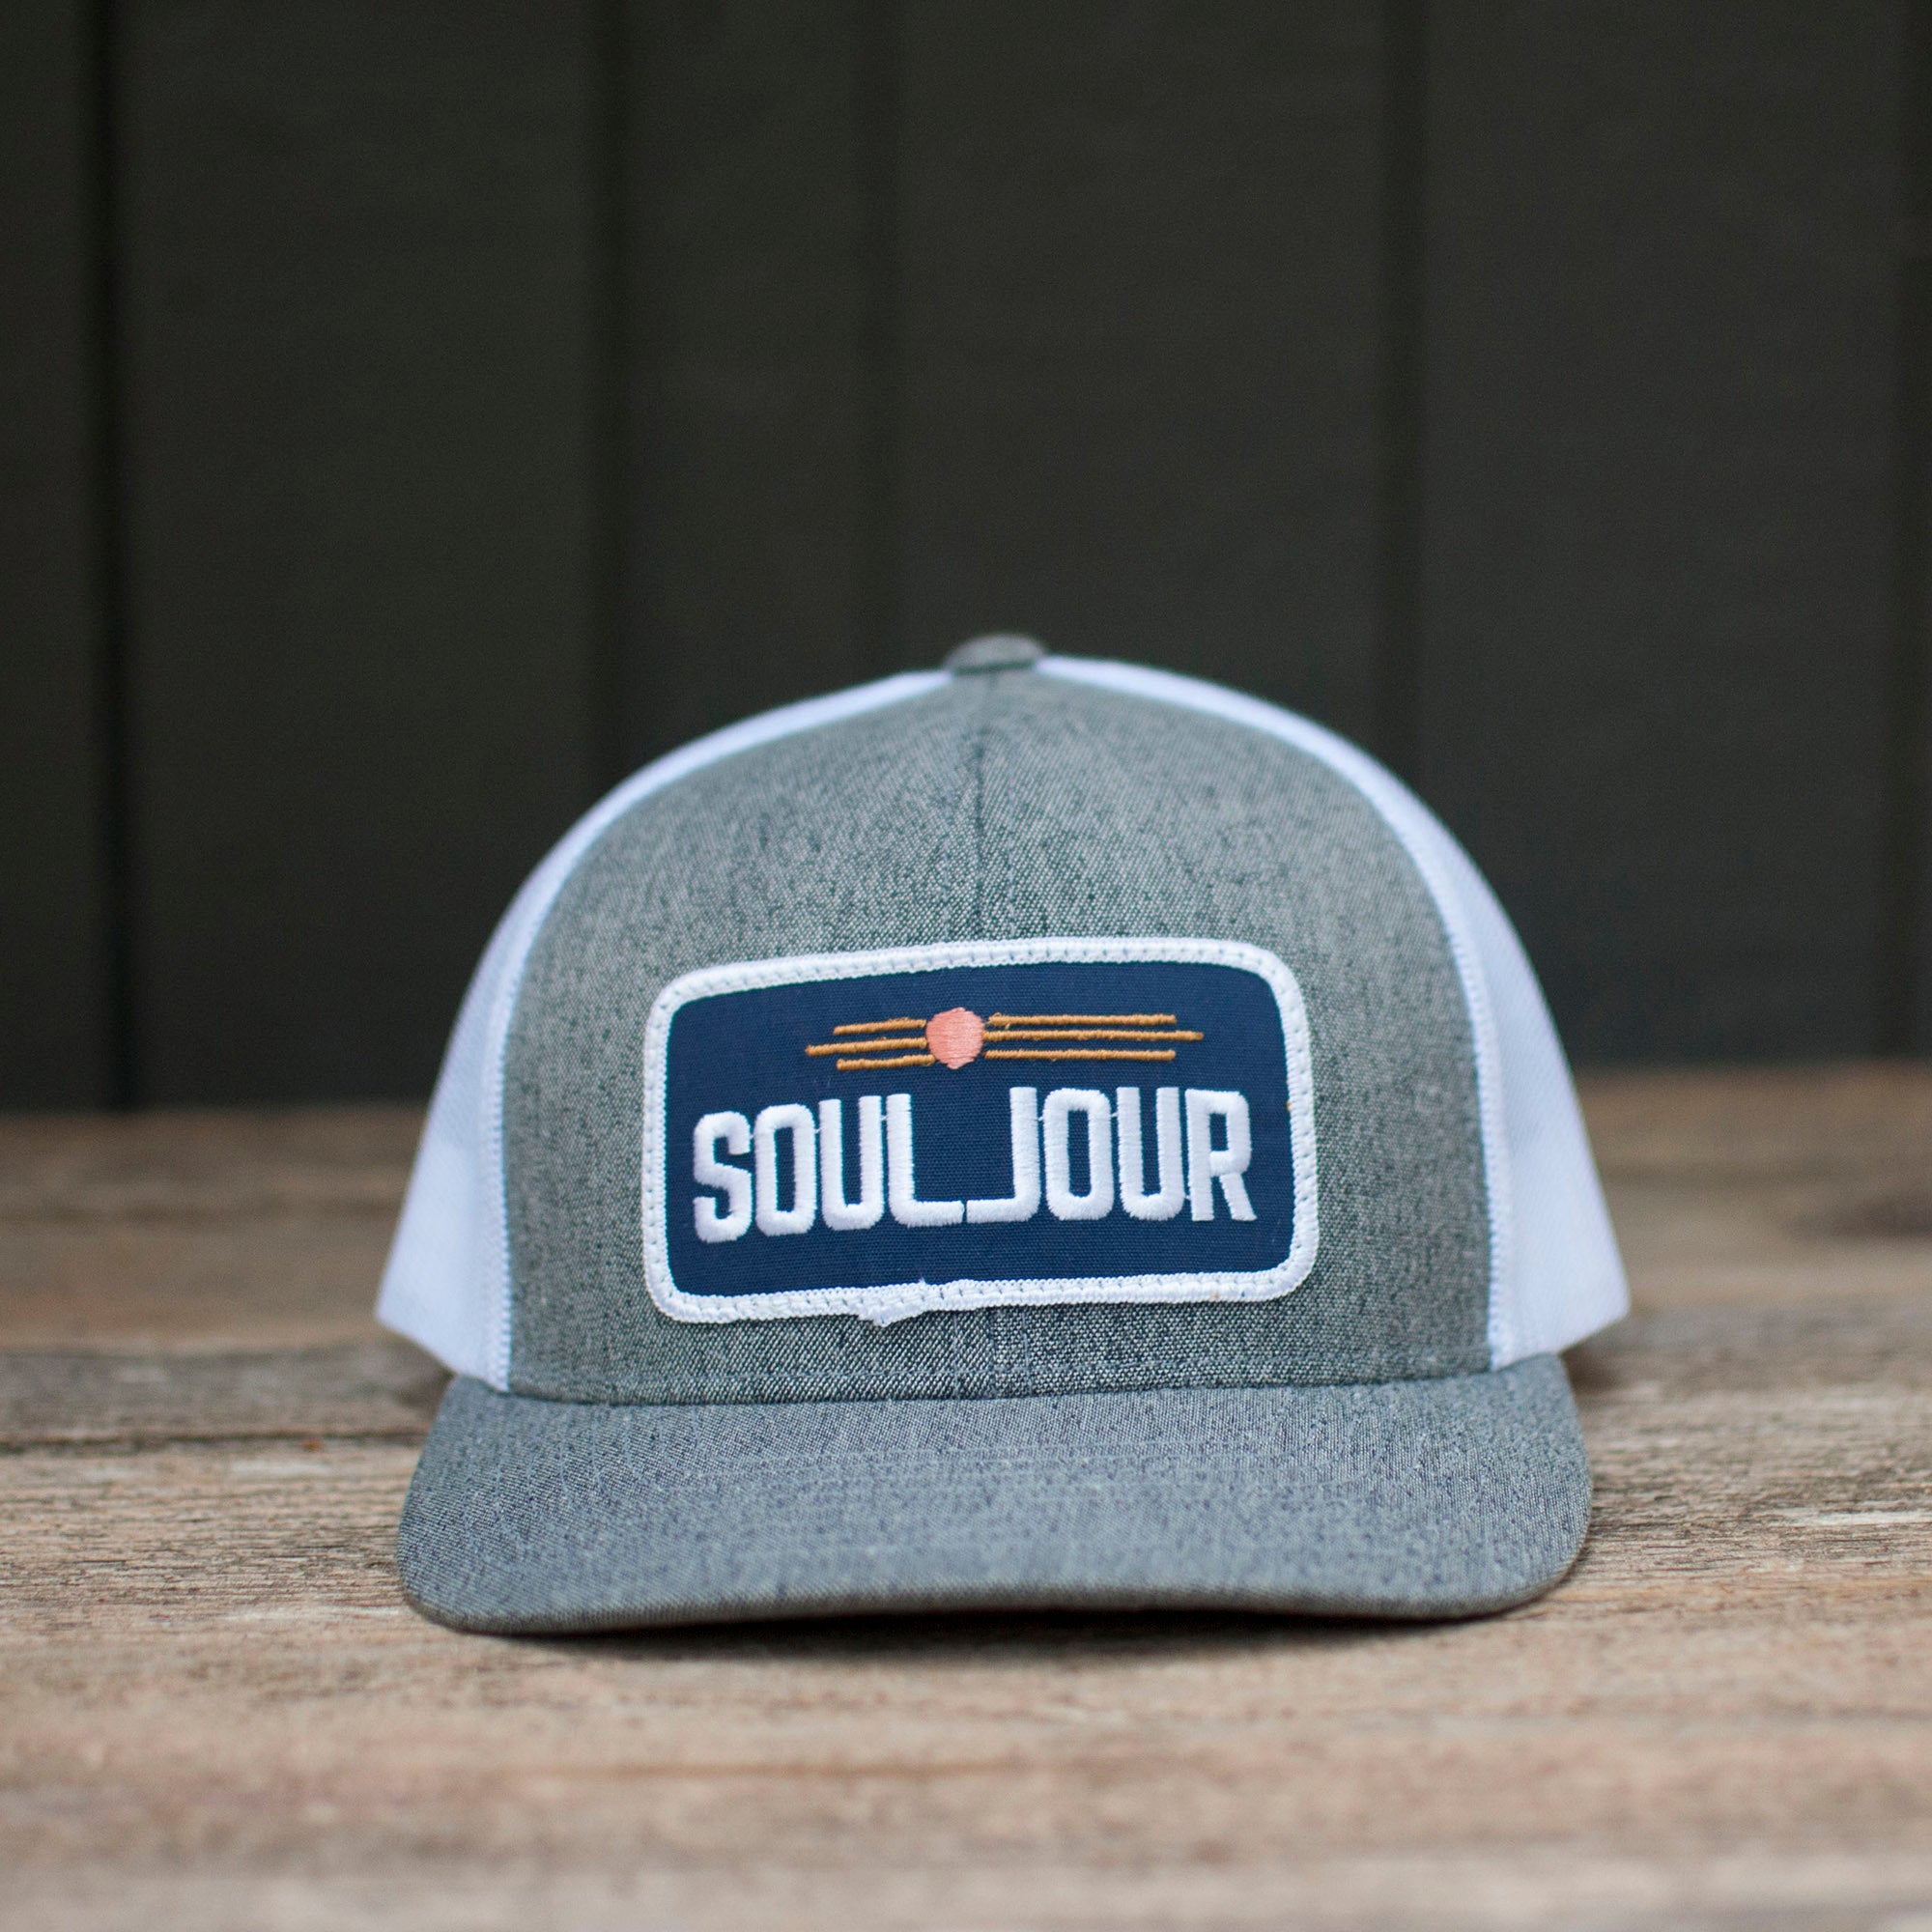 SoulJour Twill Trucker Hat